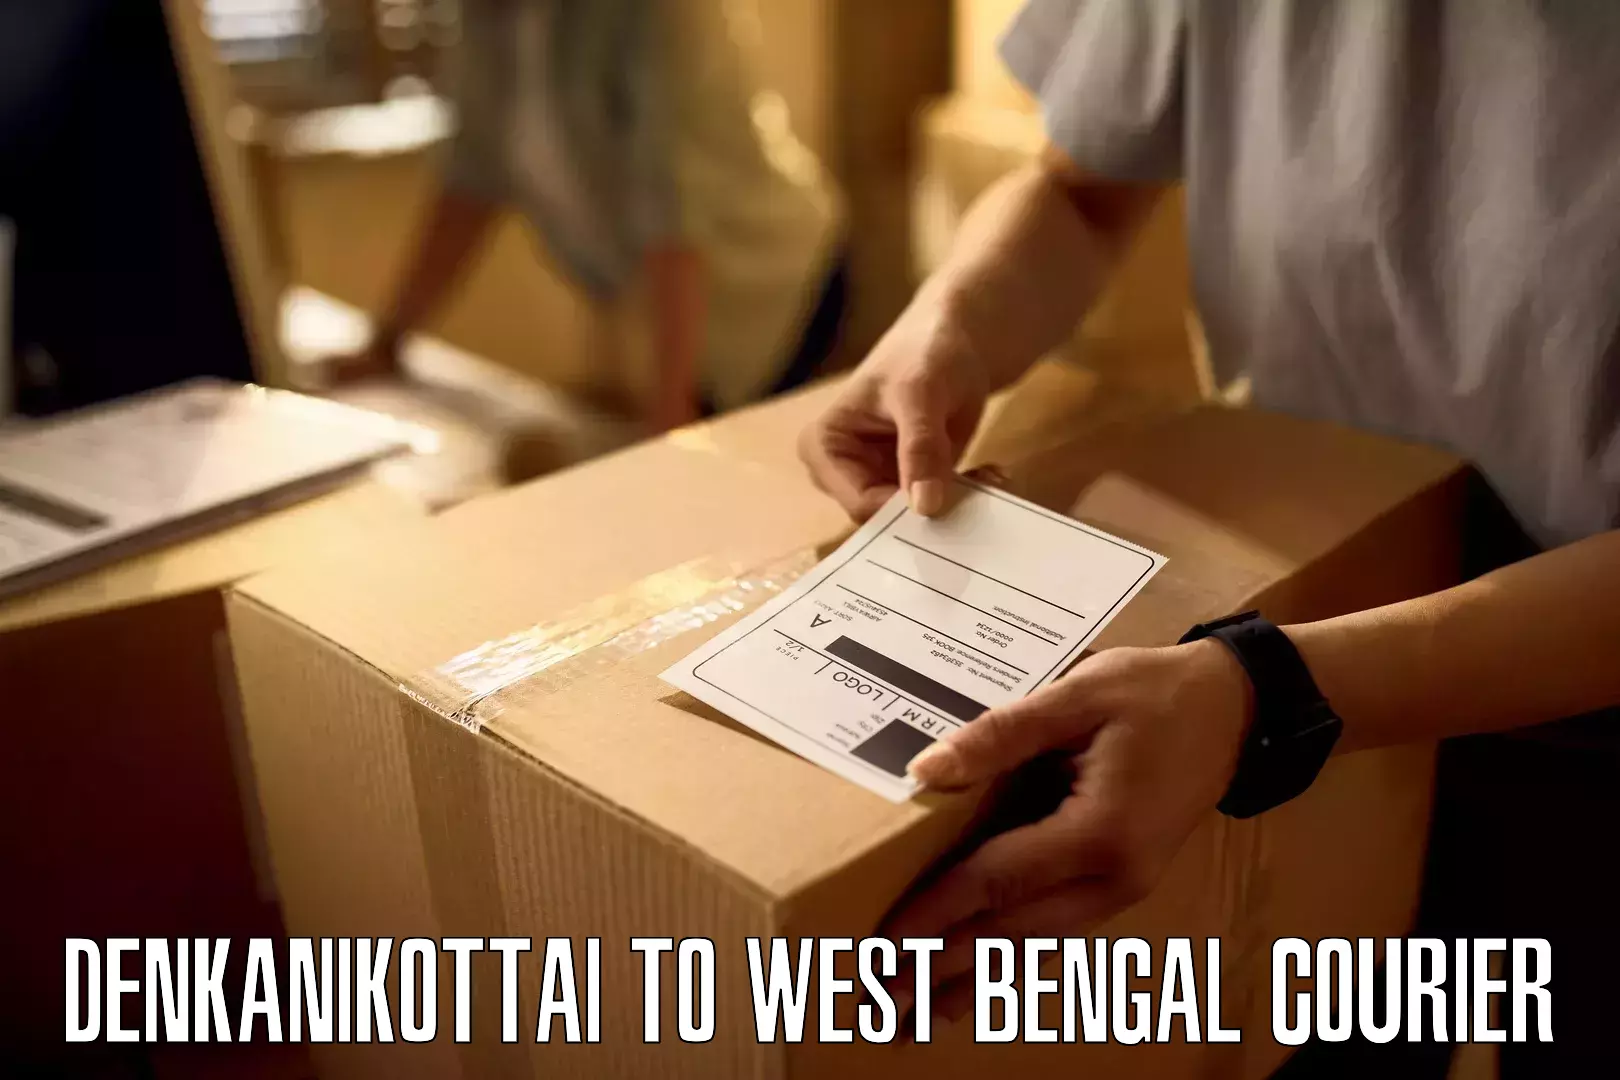 Multi-service courier options Denkanikottai to Kolkata Port